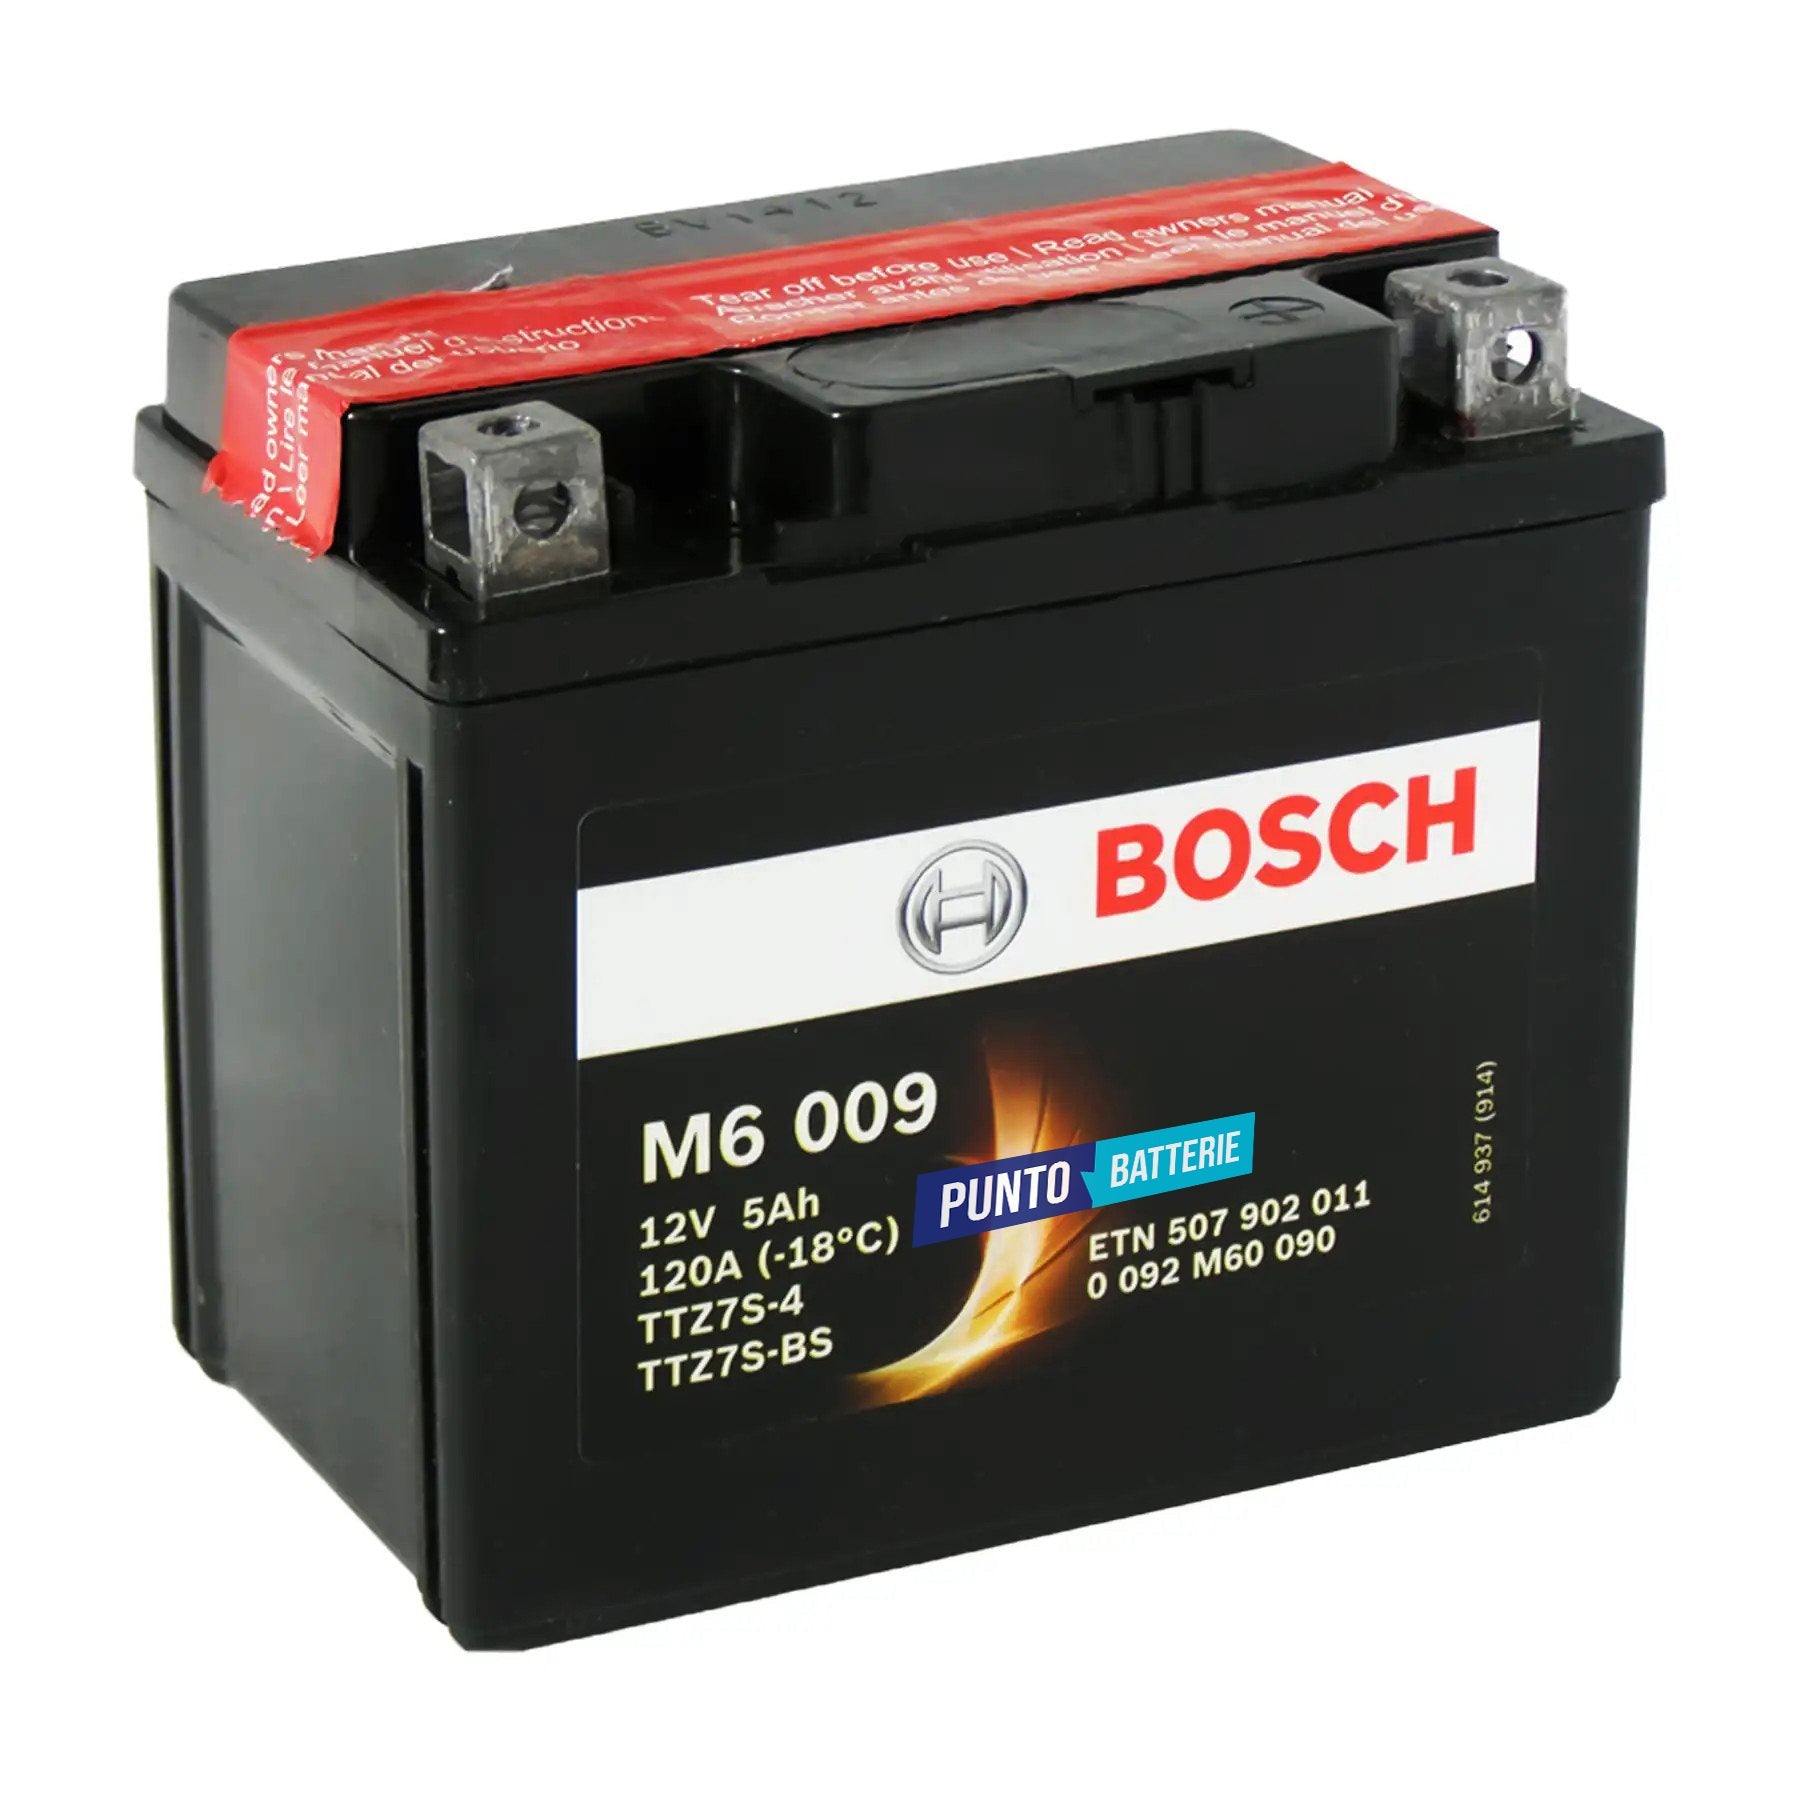 Batteria originale Bosch M6 M6009, dimensioni 165 x 130 x 176, polo positivo a destra, 12 volt, 5 amperora, 120 ampere. Batteria per moto, scooter e powersport.